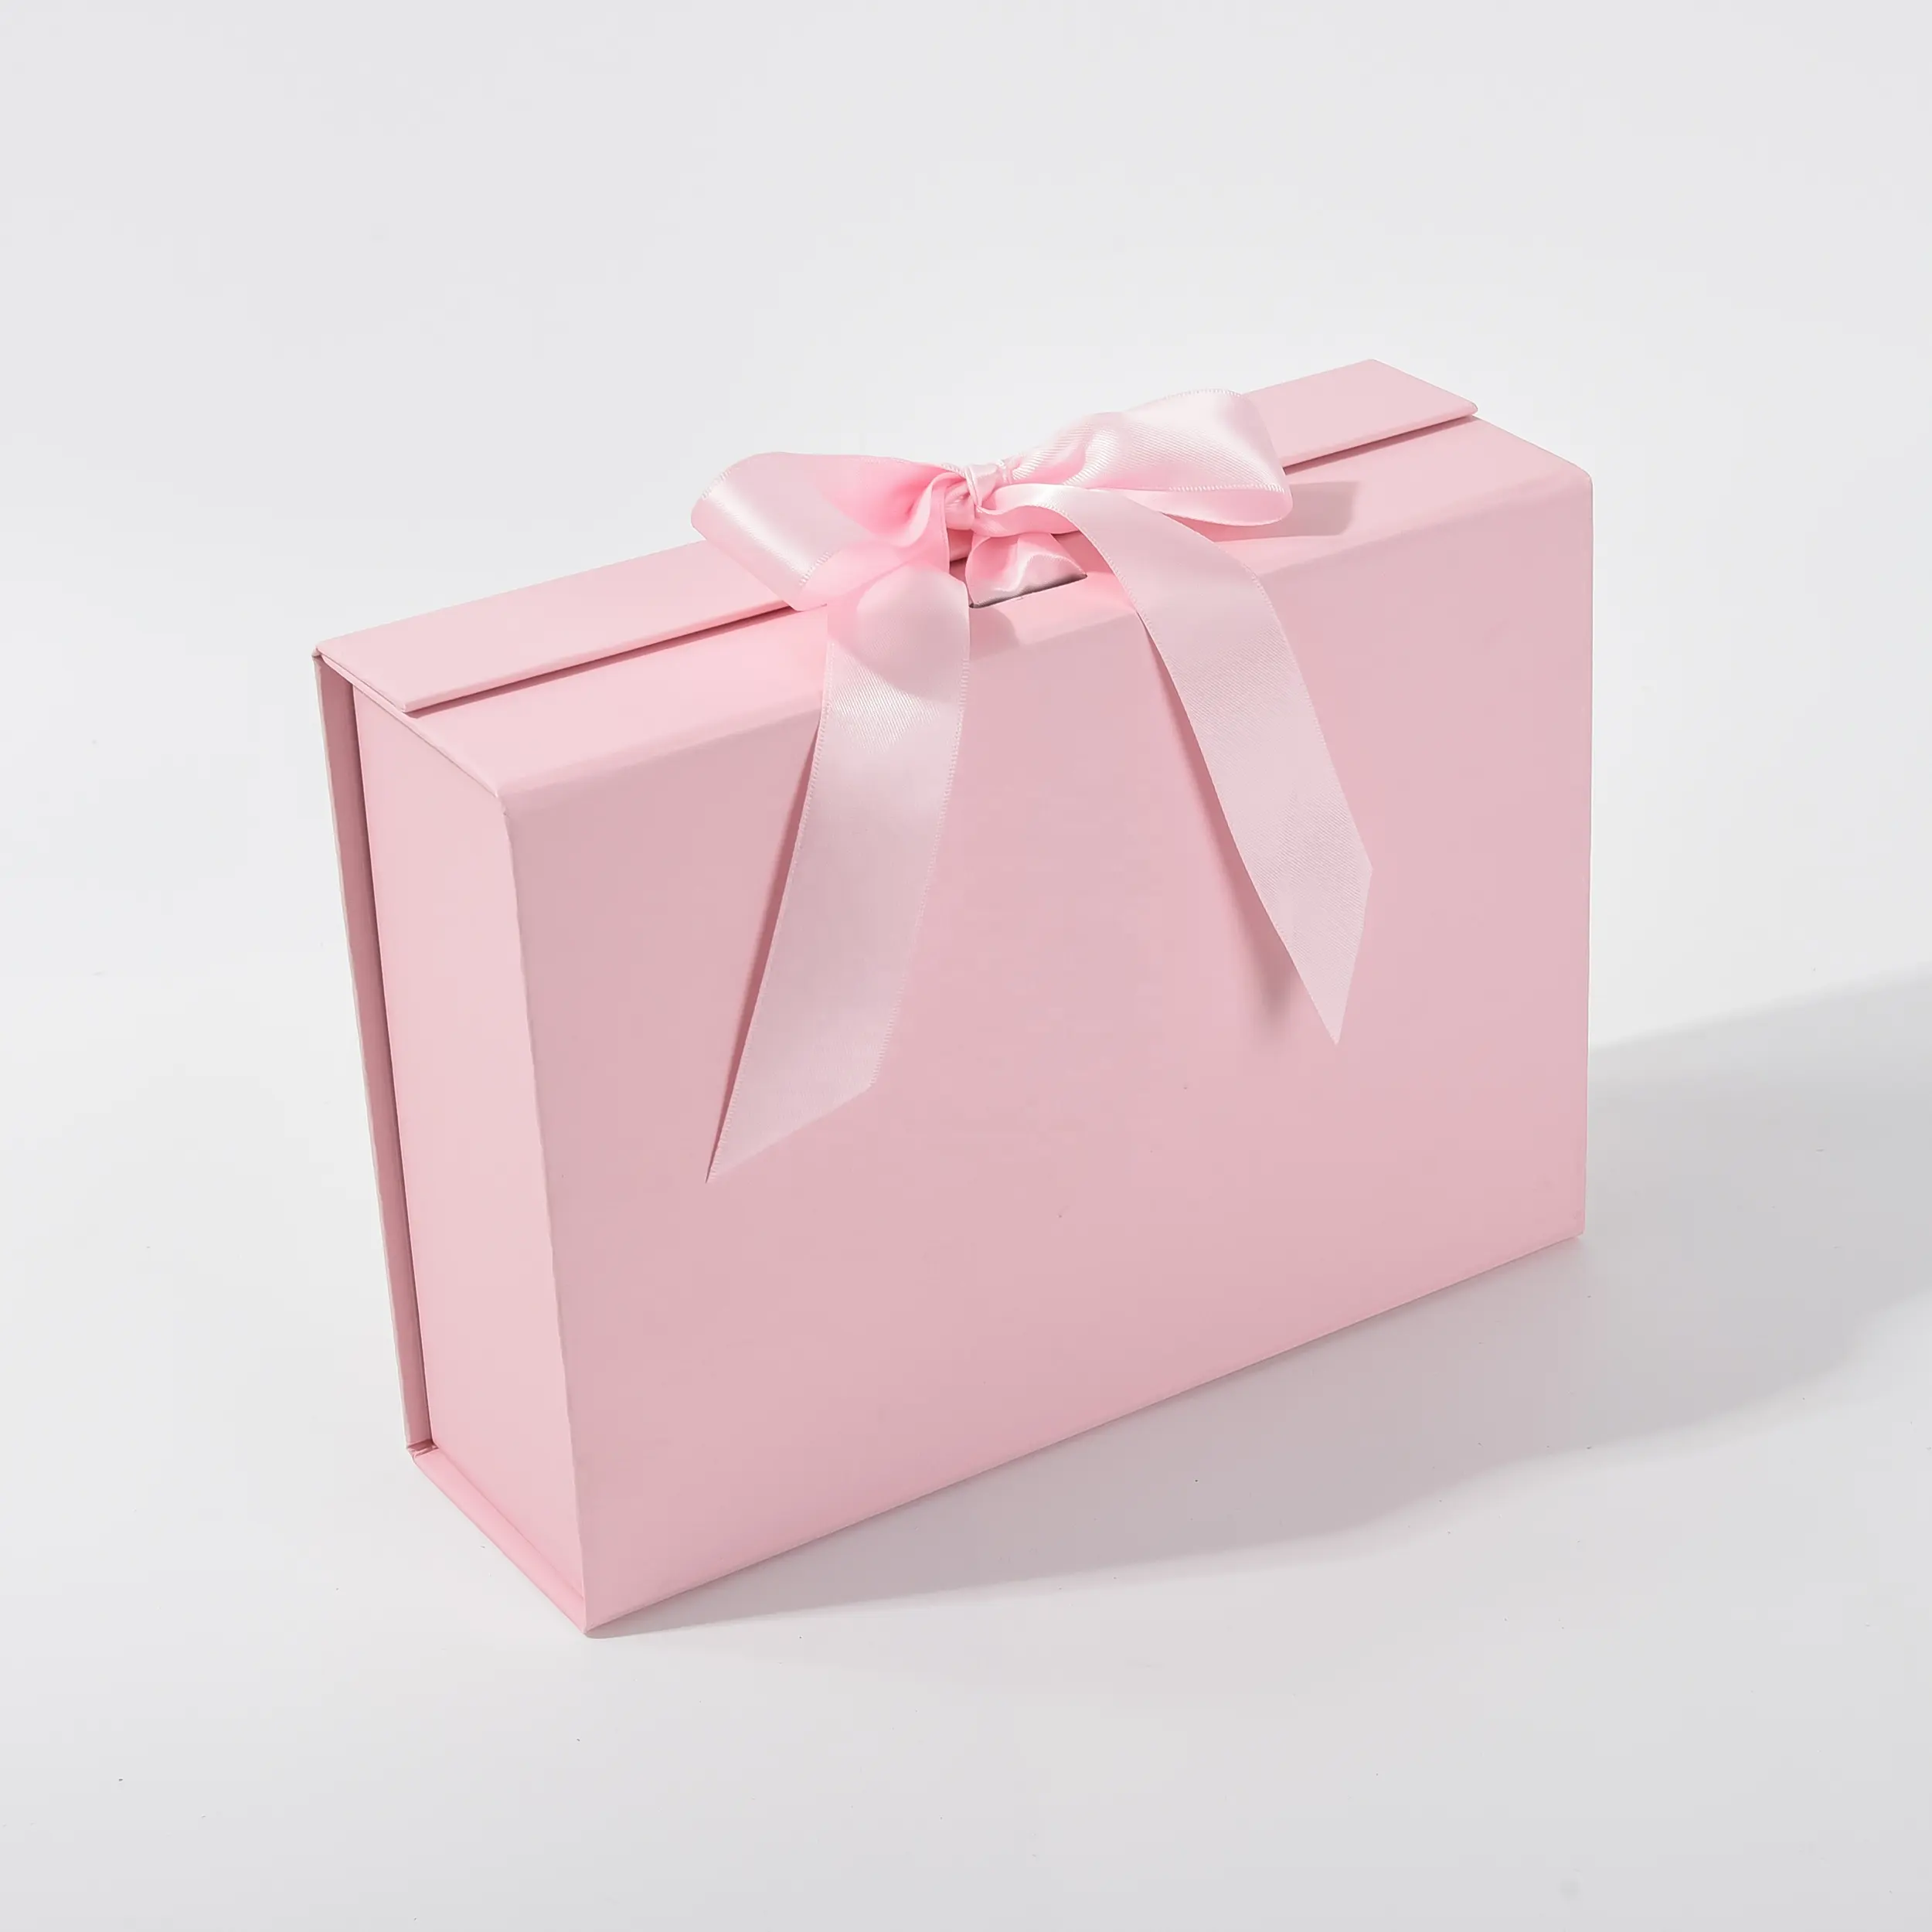 Venta al por mayor de cartón plano plegable personalizado de lujo pastelería pan pastel Rosa panadería Donut cajas de papel Kraft